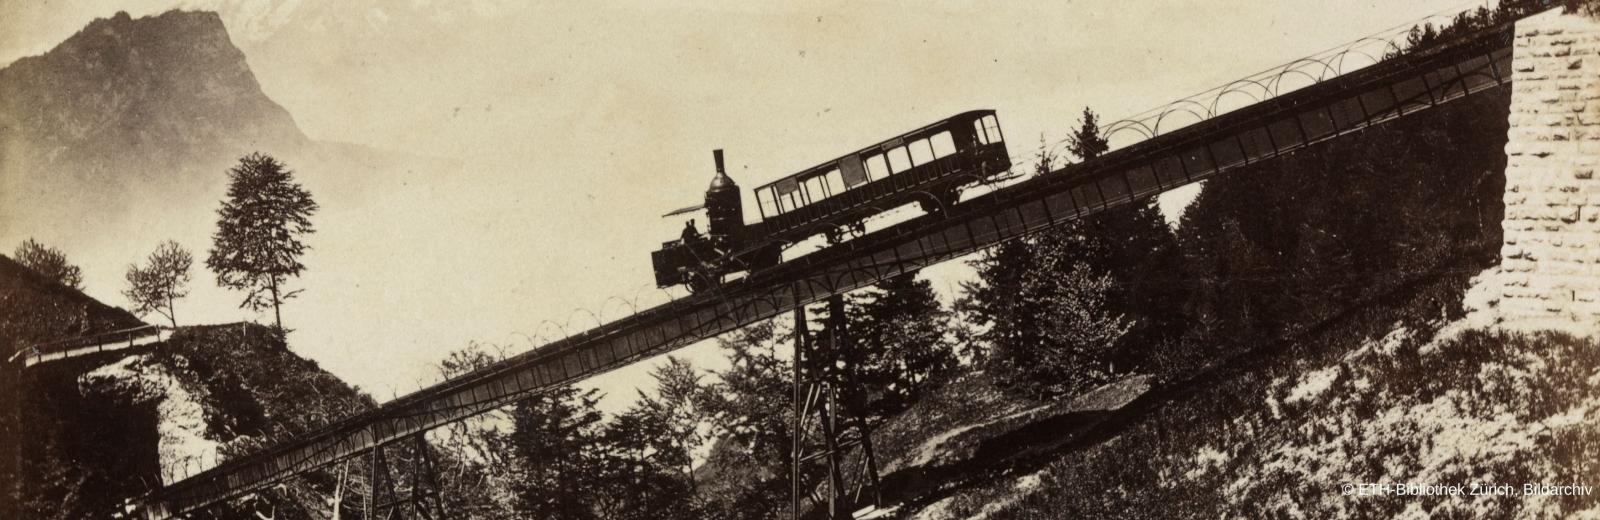 Uno de los primeros convoyes, fotografiado en la década de 1870.